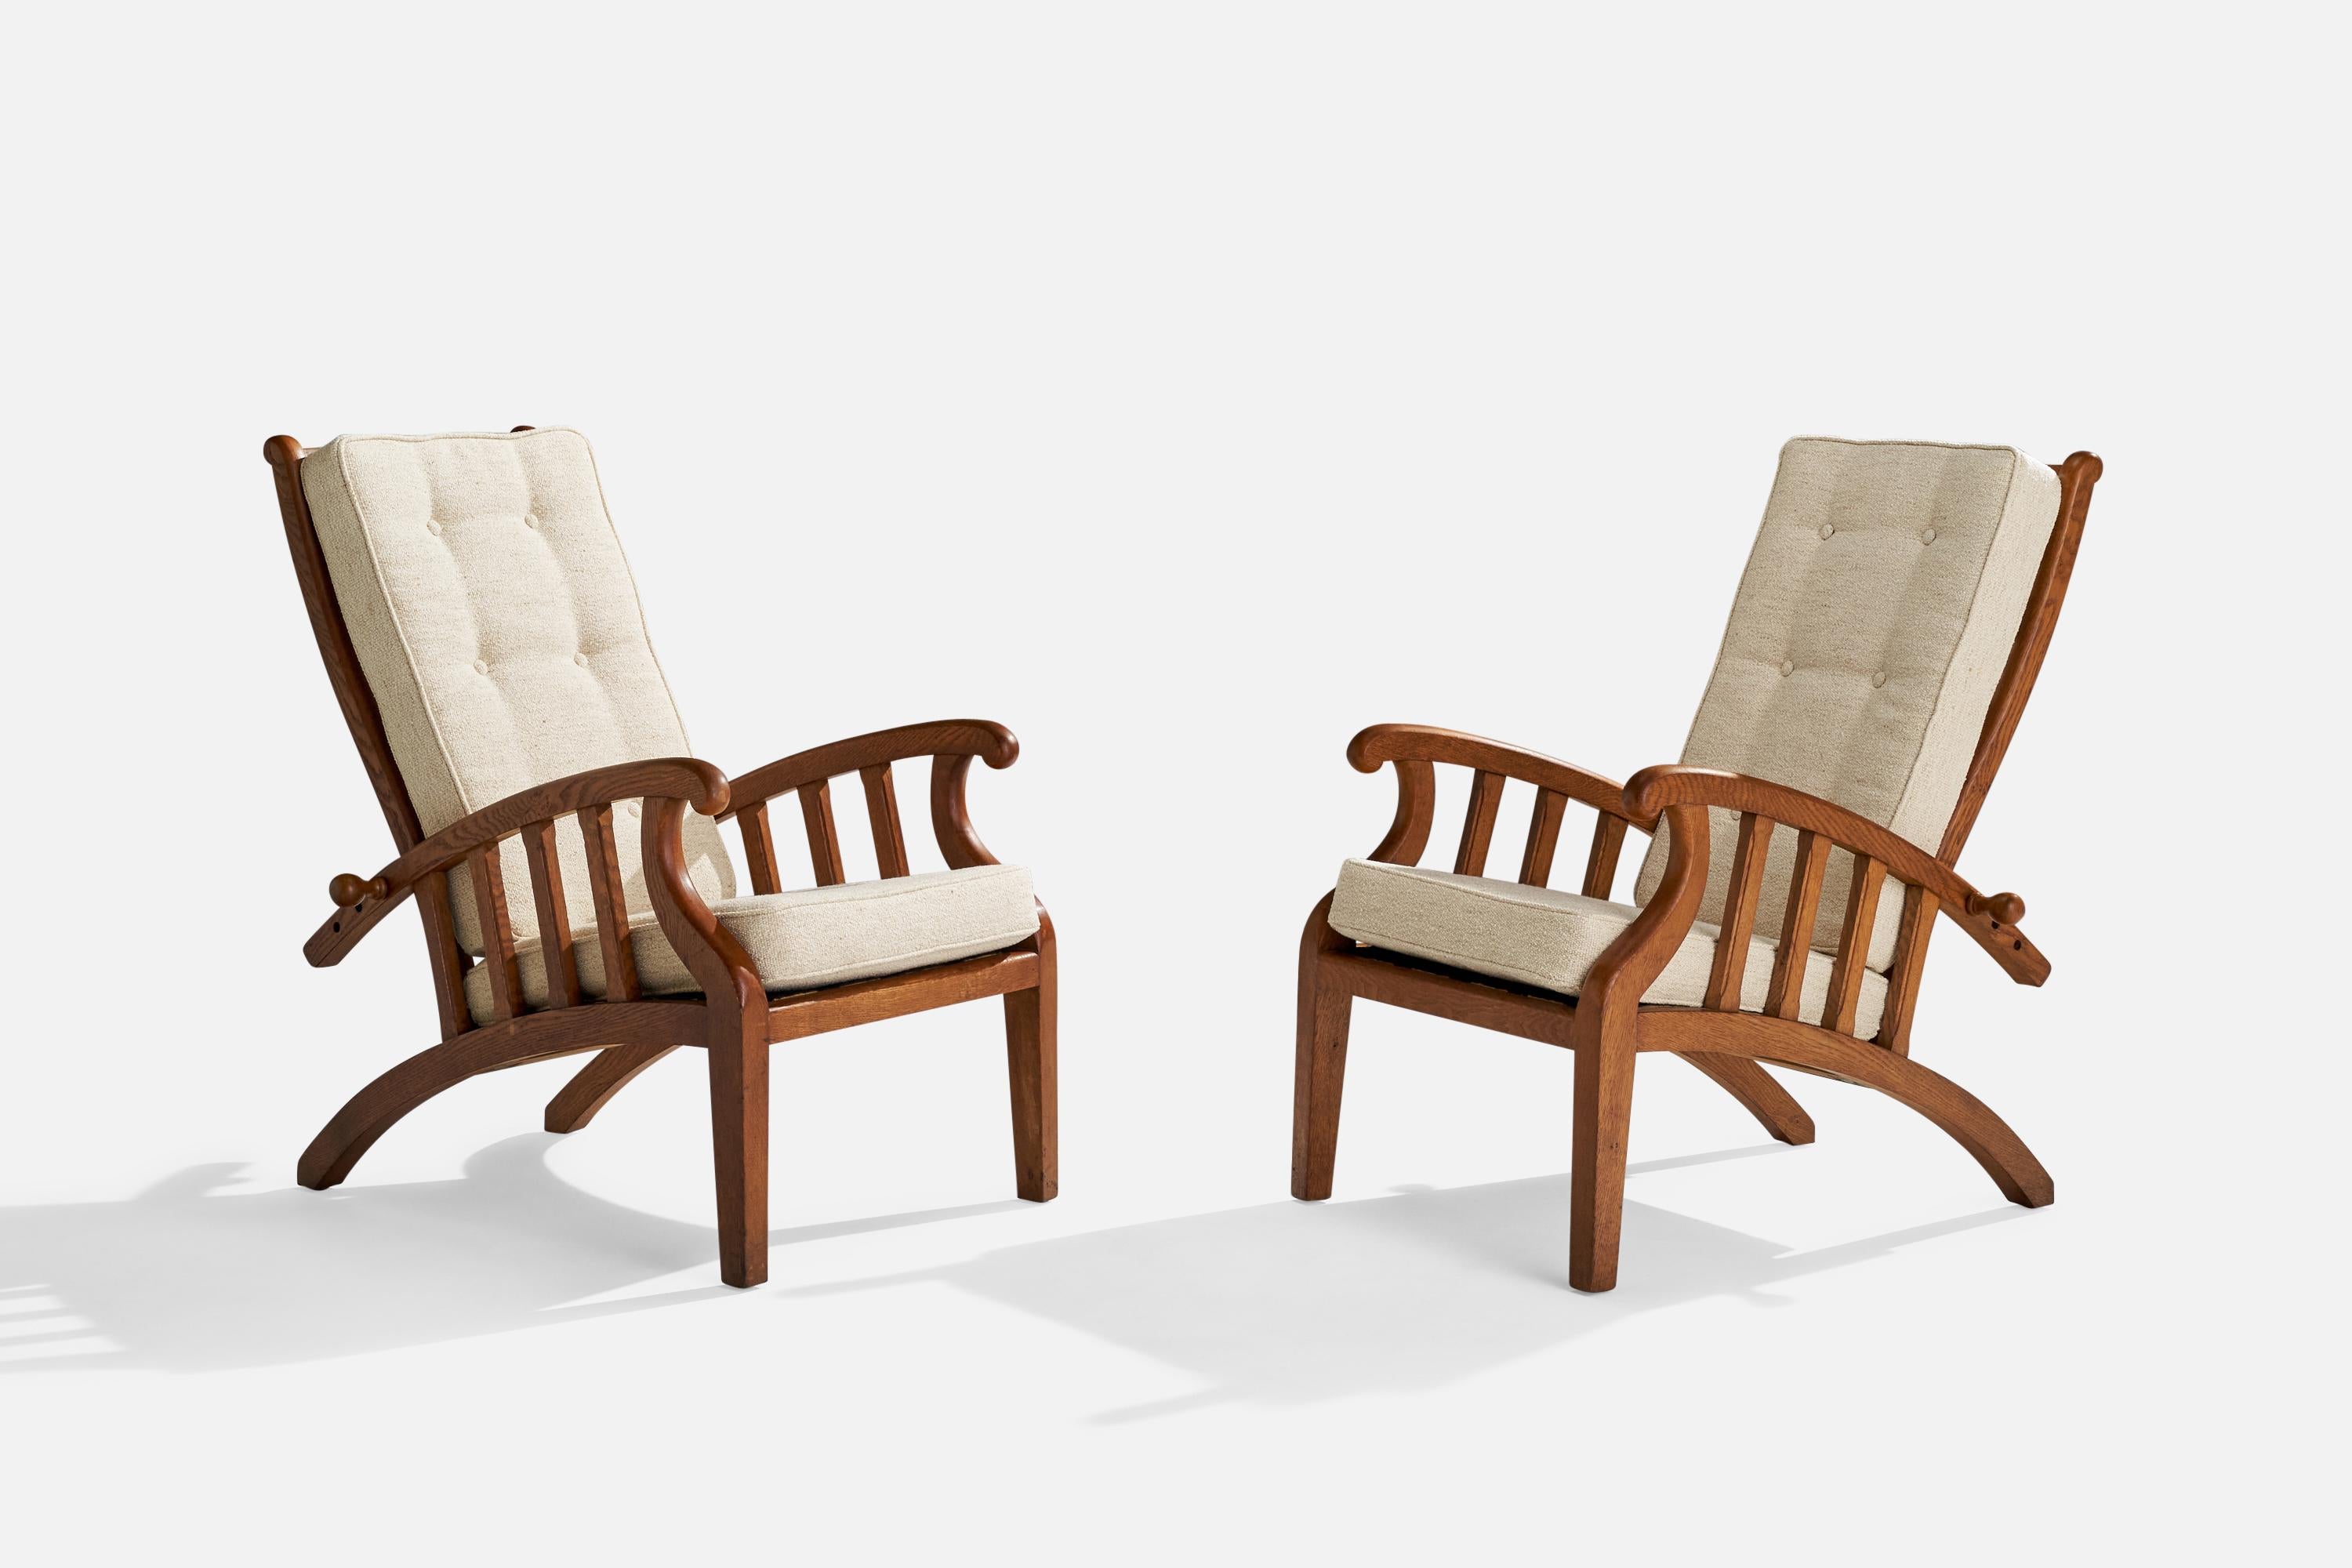 Paire de chaises de salon réglables en chêne teinté et tissu blanc, conçues et produites au Danemark, vers les années 1920.

Hauteur du siège 17.5